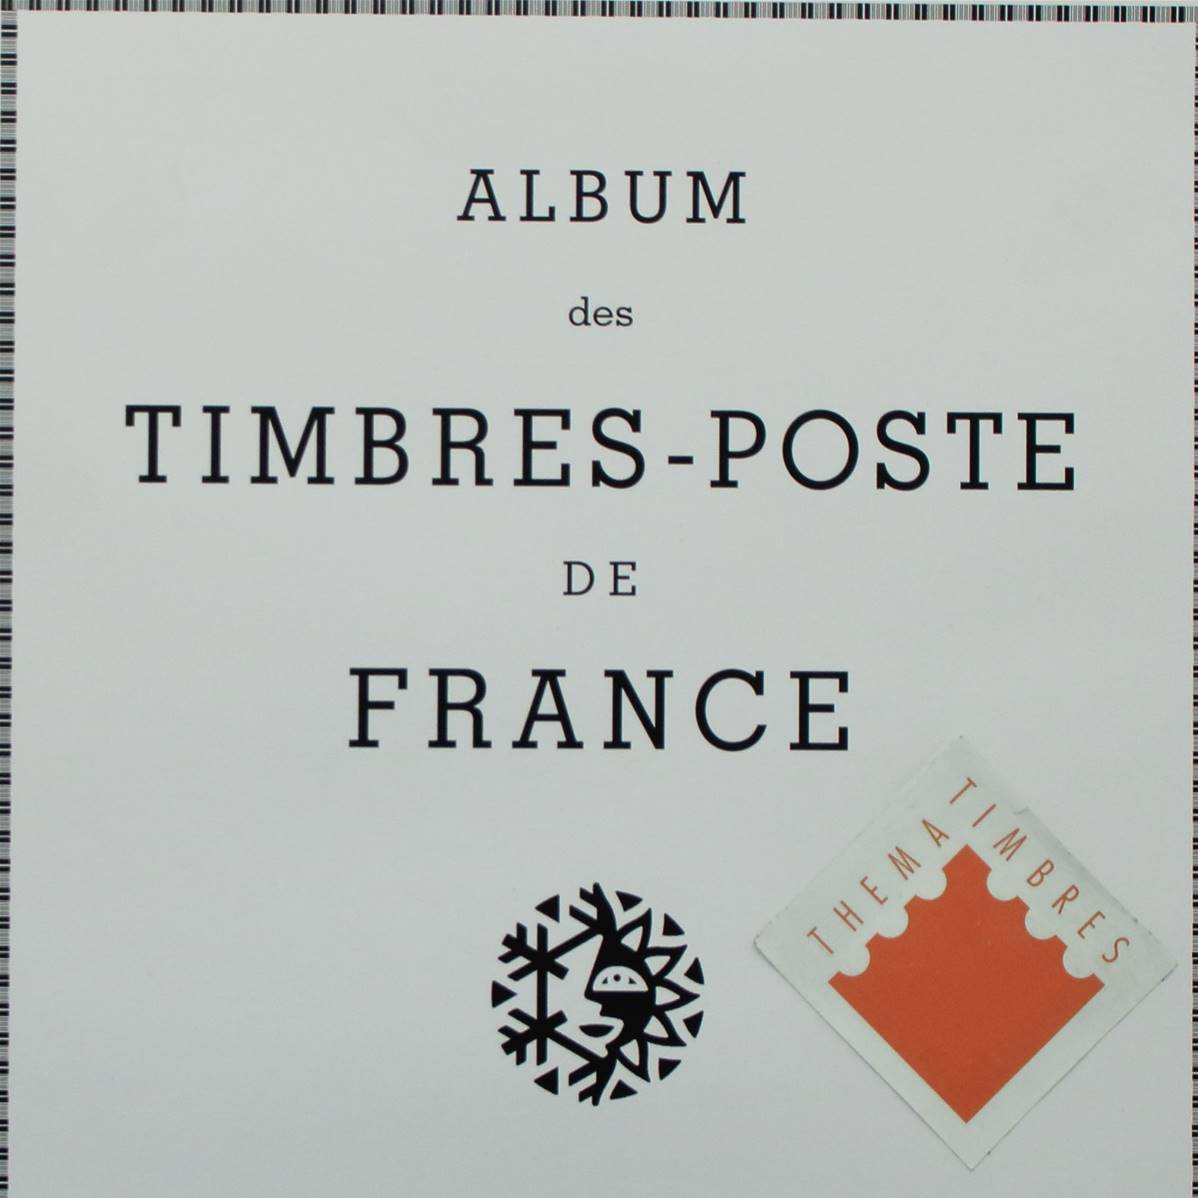 Album de timbres-poste Timbres de France / Yvert & Tellier / Futura  Volume 1.